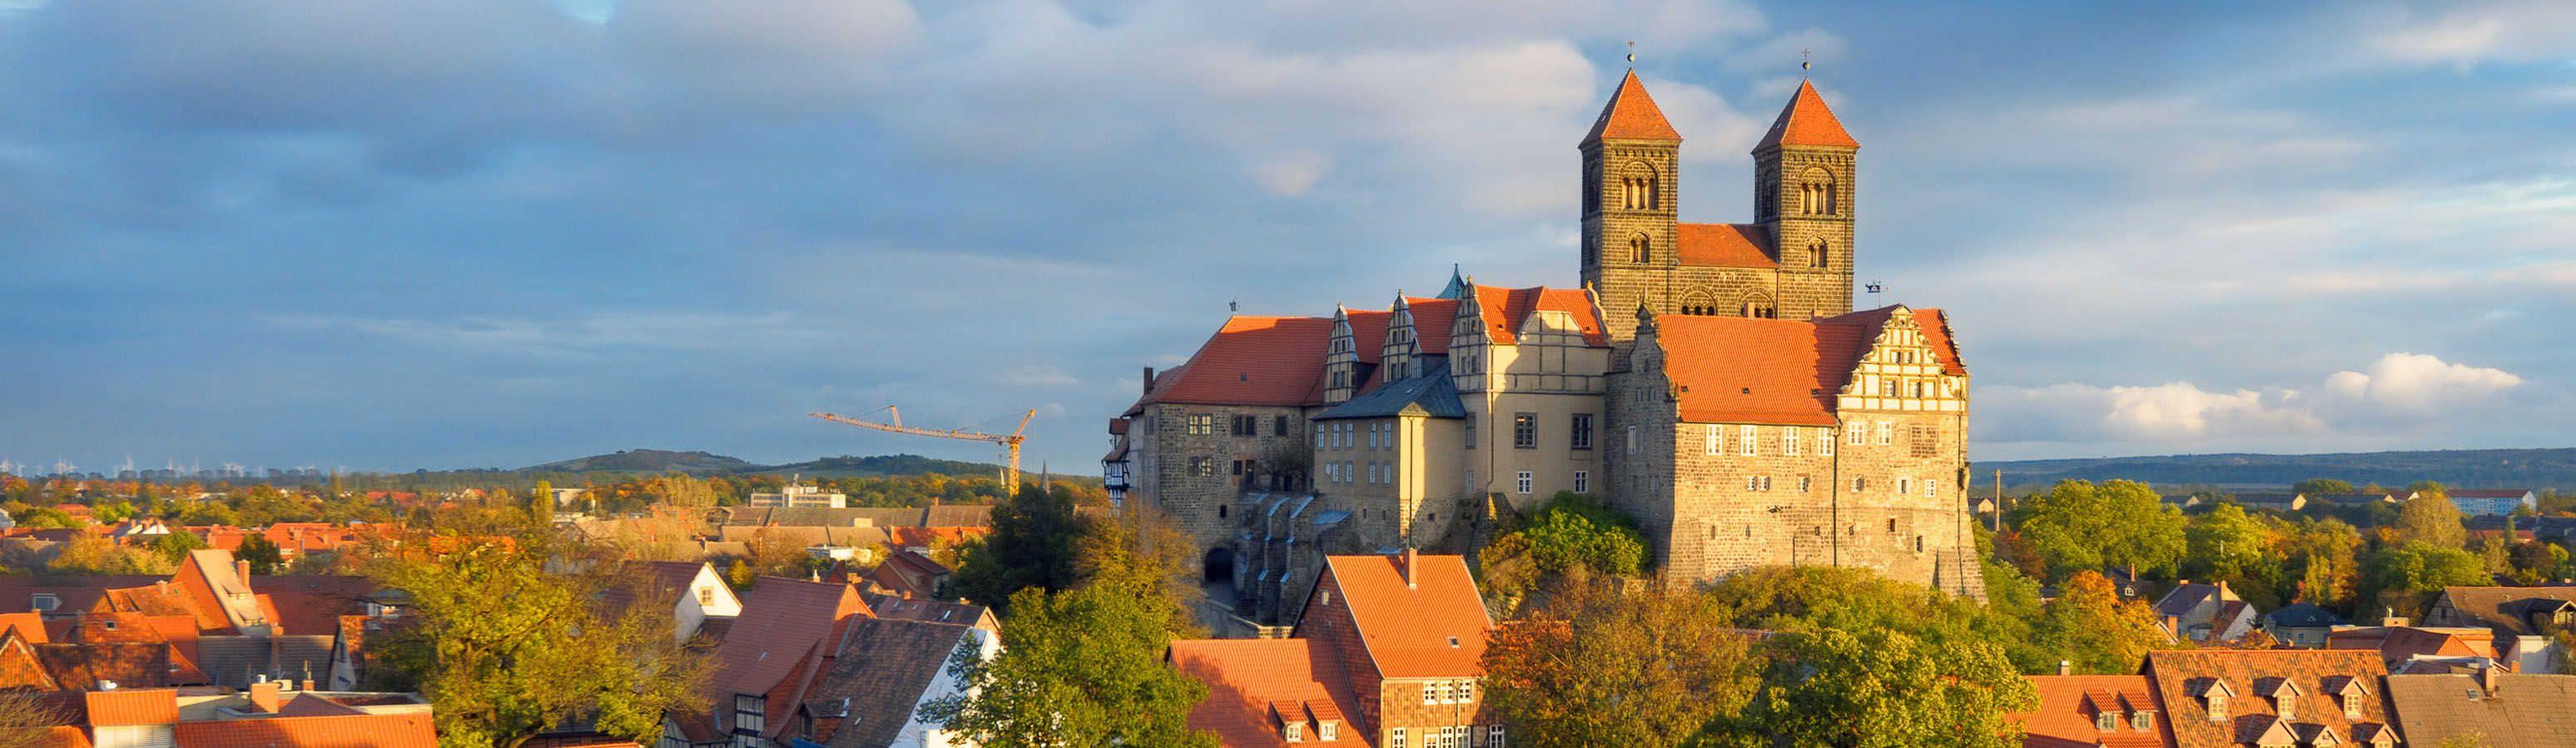 Miért érdemes ellátogatni Szászországba - Anhaltba?